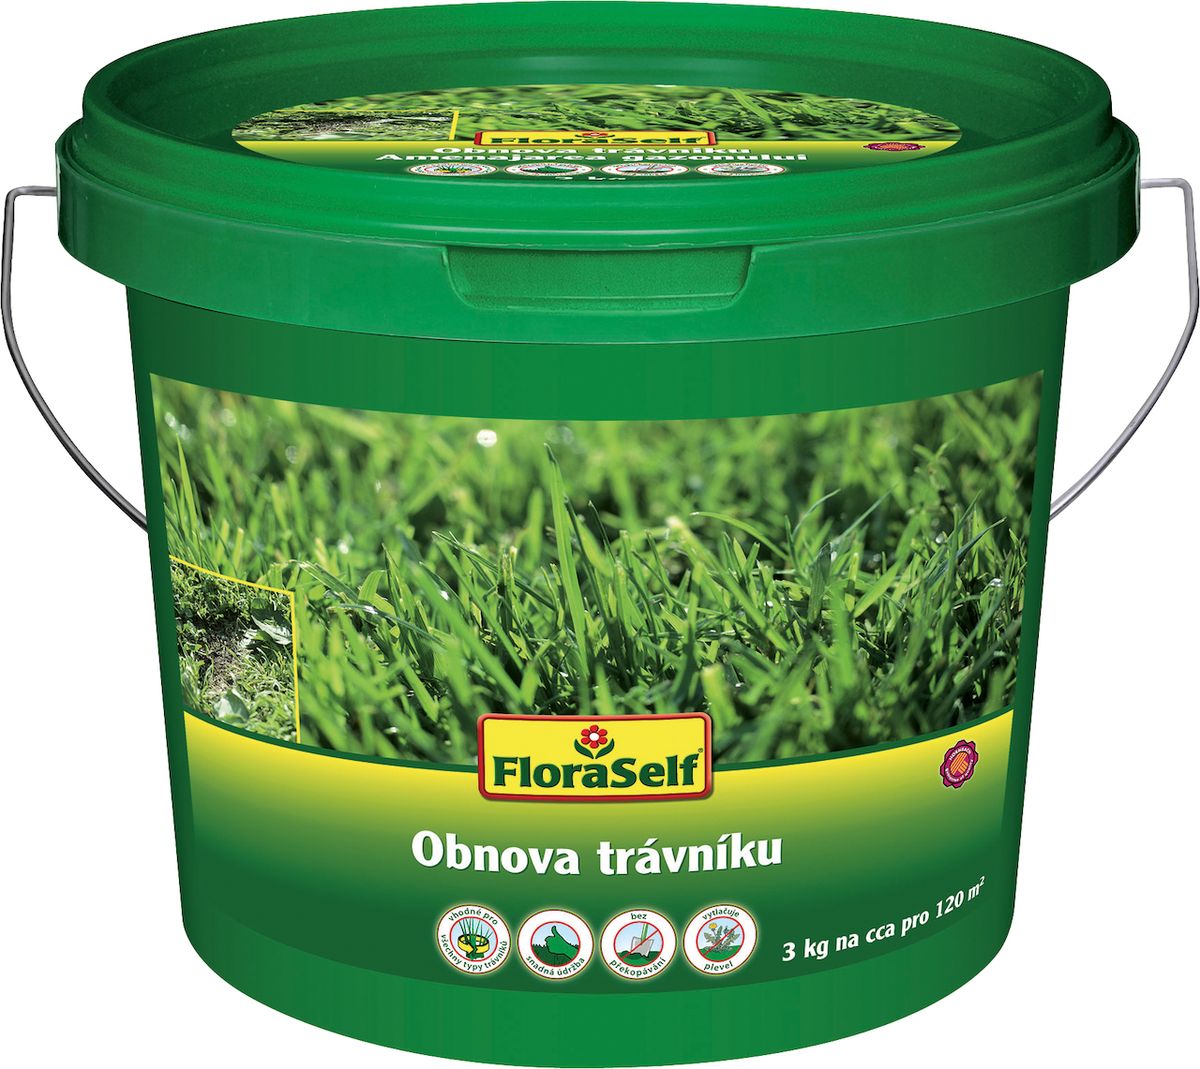 Na trhu lze nalézt směsi travního semene určené přímo pro obnovu trávníku.